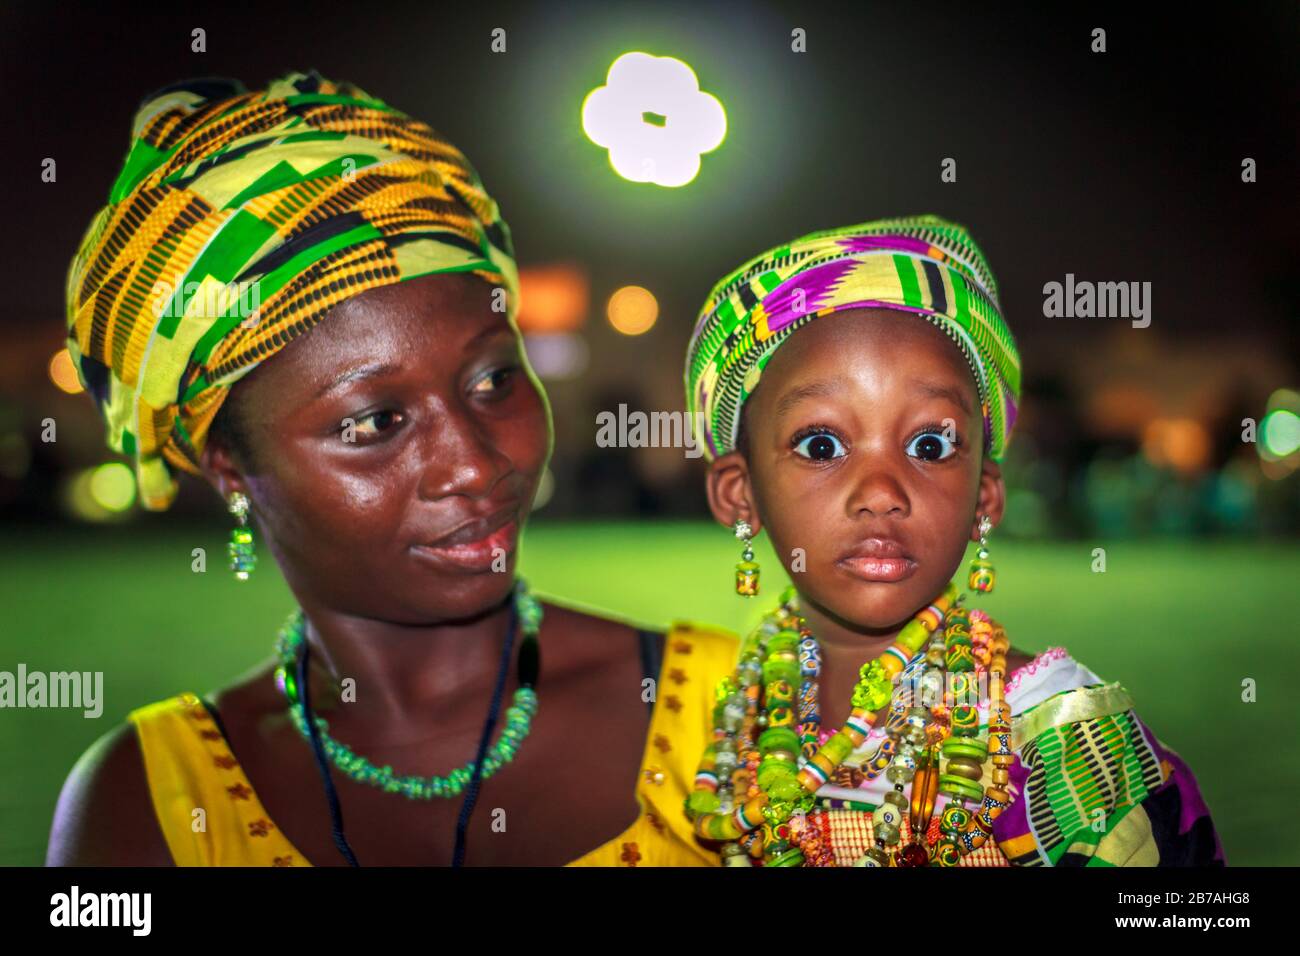 Portrait de la mère et de la fille africaines dans des costumes traditionnels de tribu avec fond flou Banque D'Images